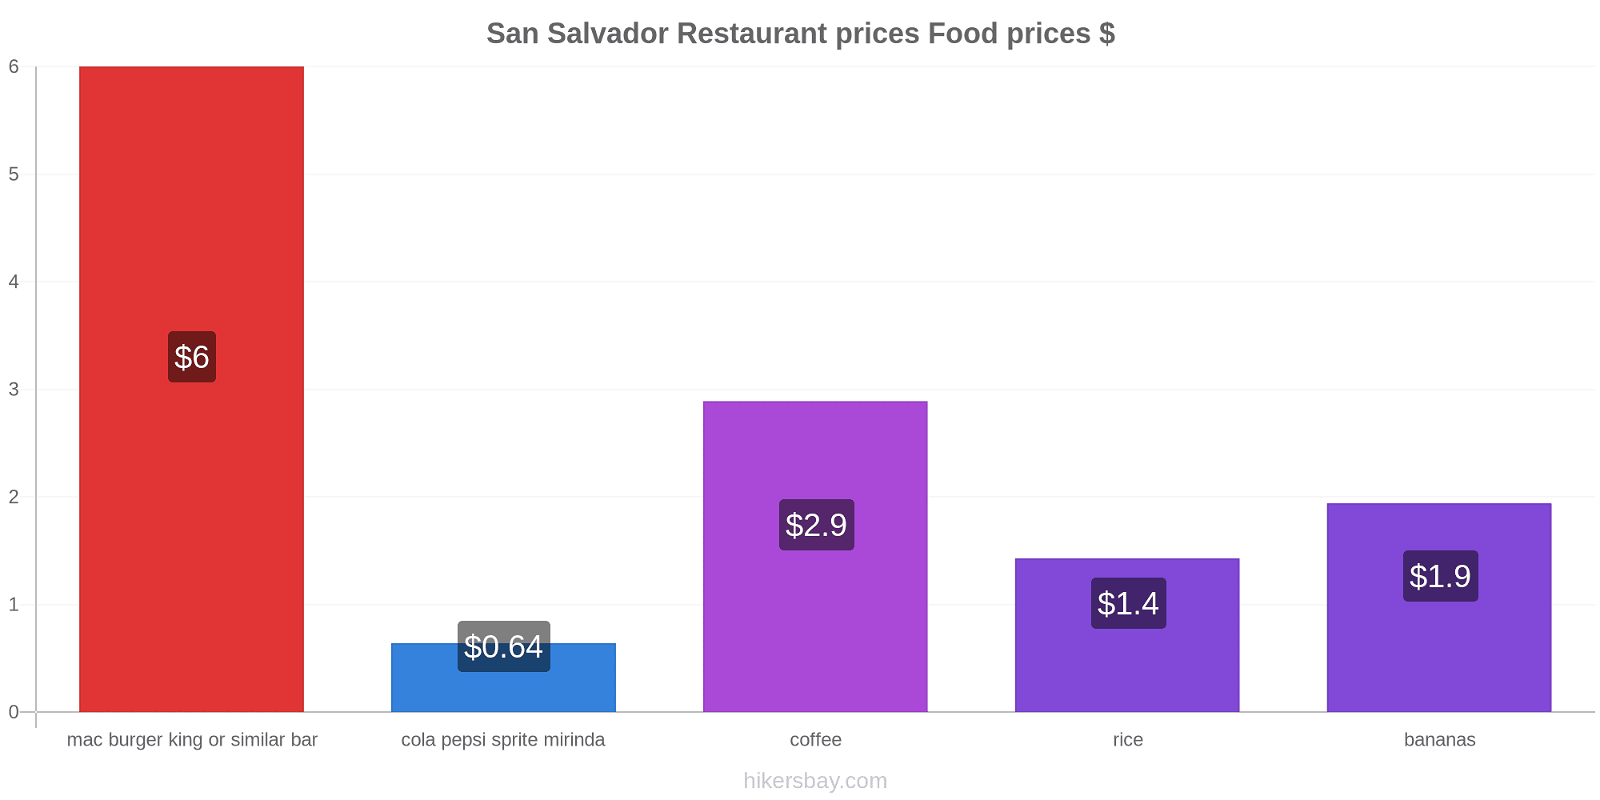 San Salvador price changes hikersbay.com